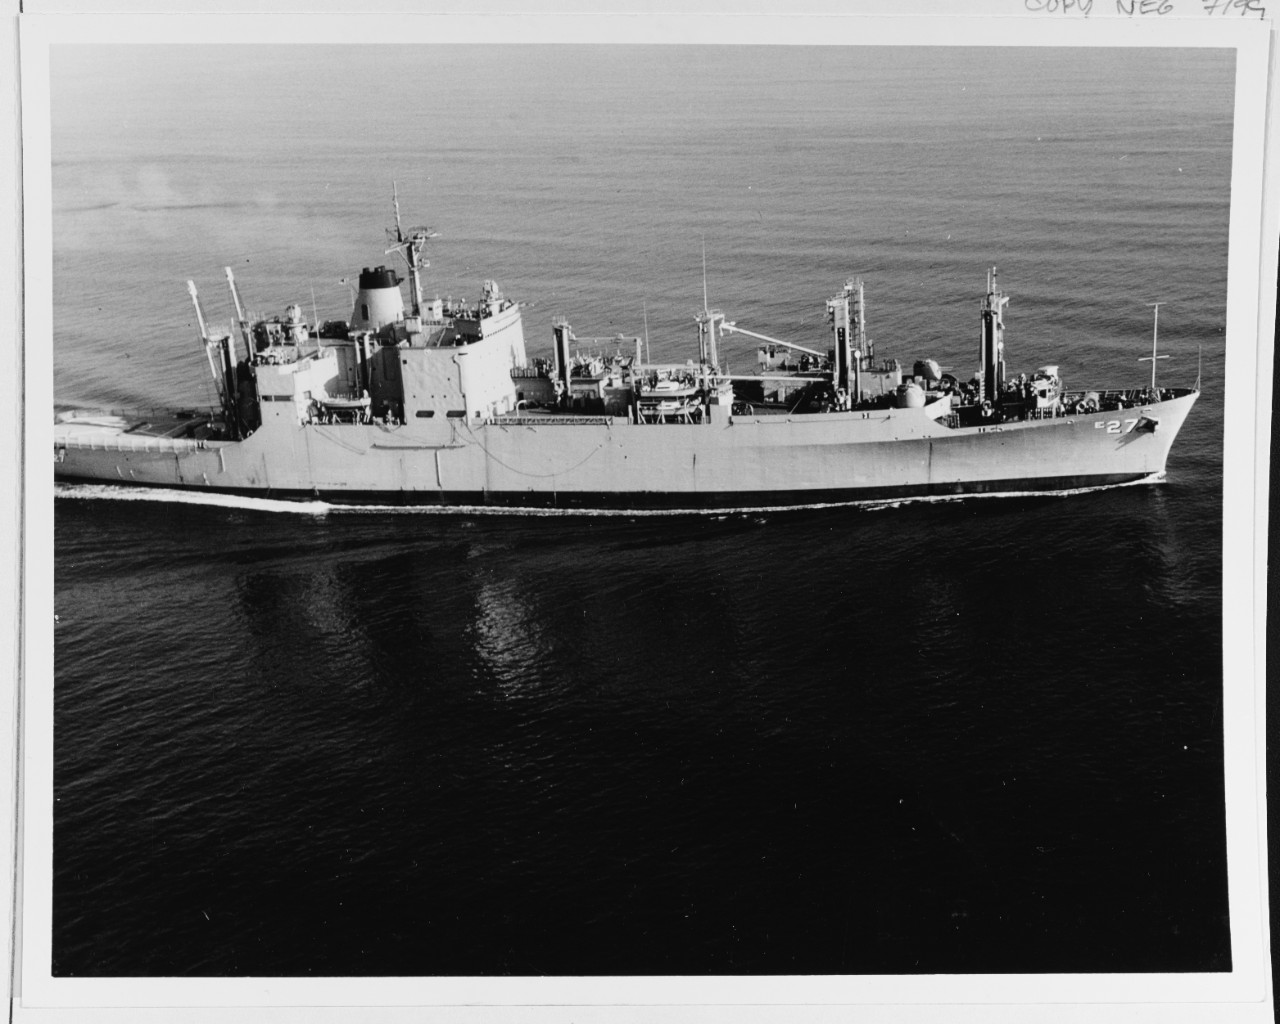 USS BUTTE (AE-27)